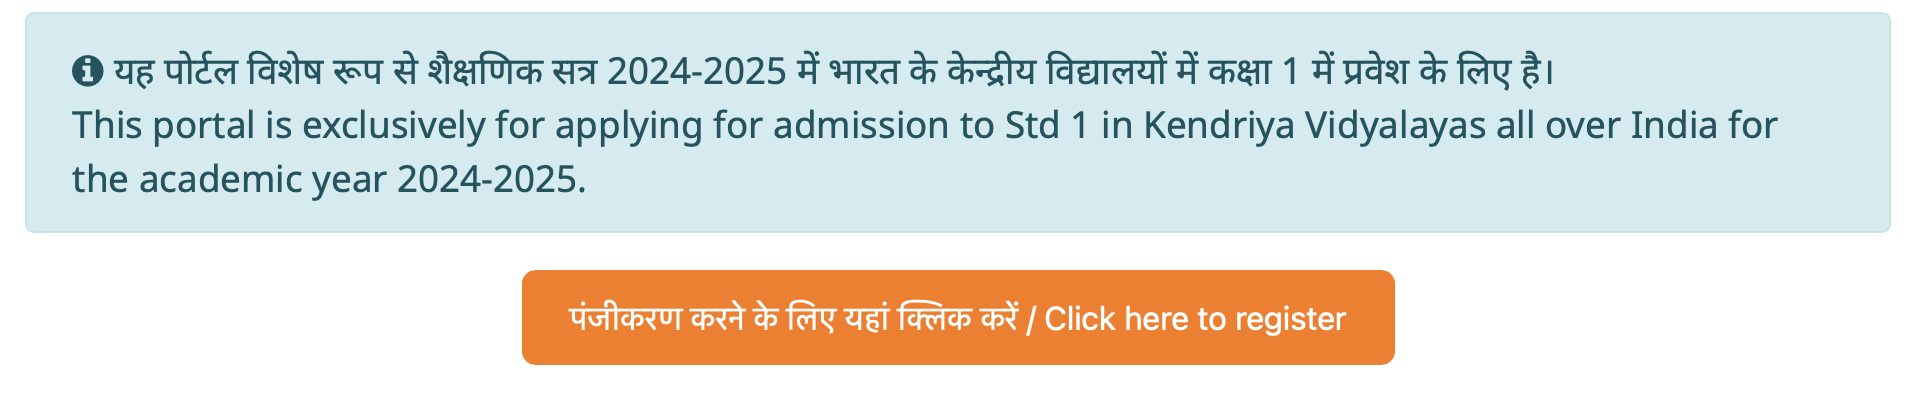 KVS Admission Registration